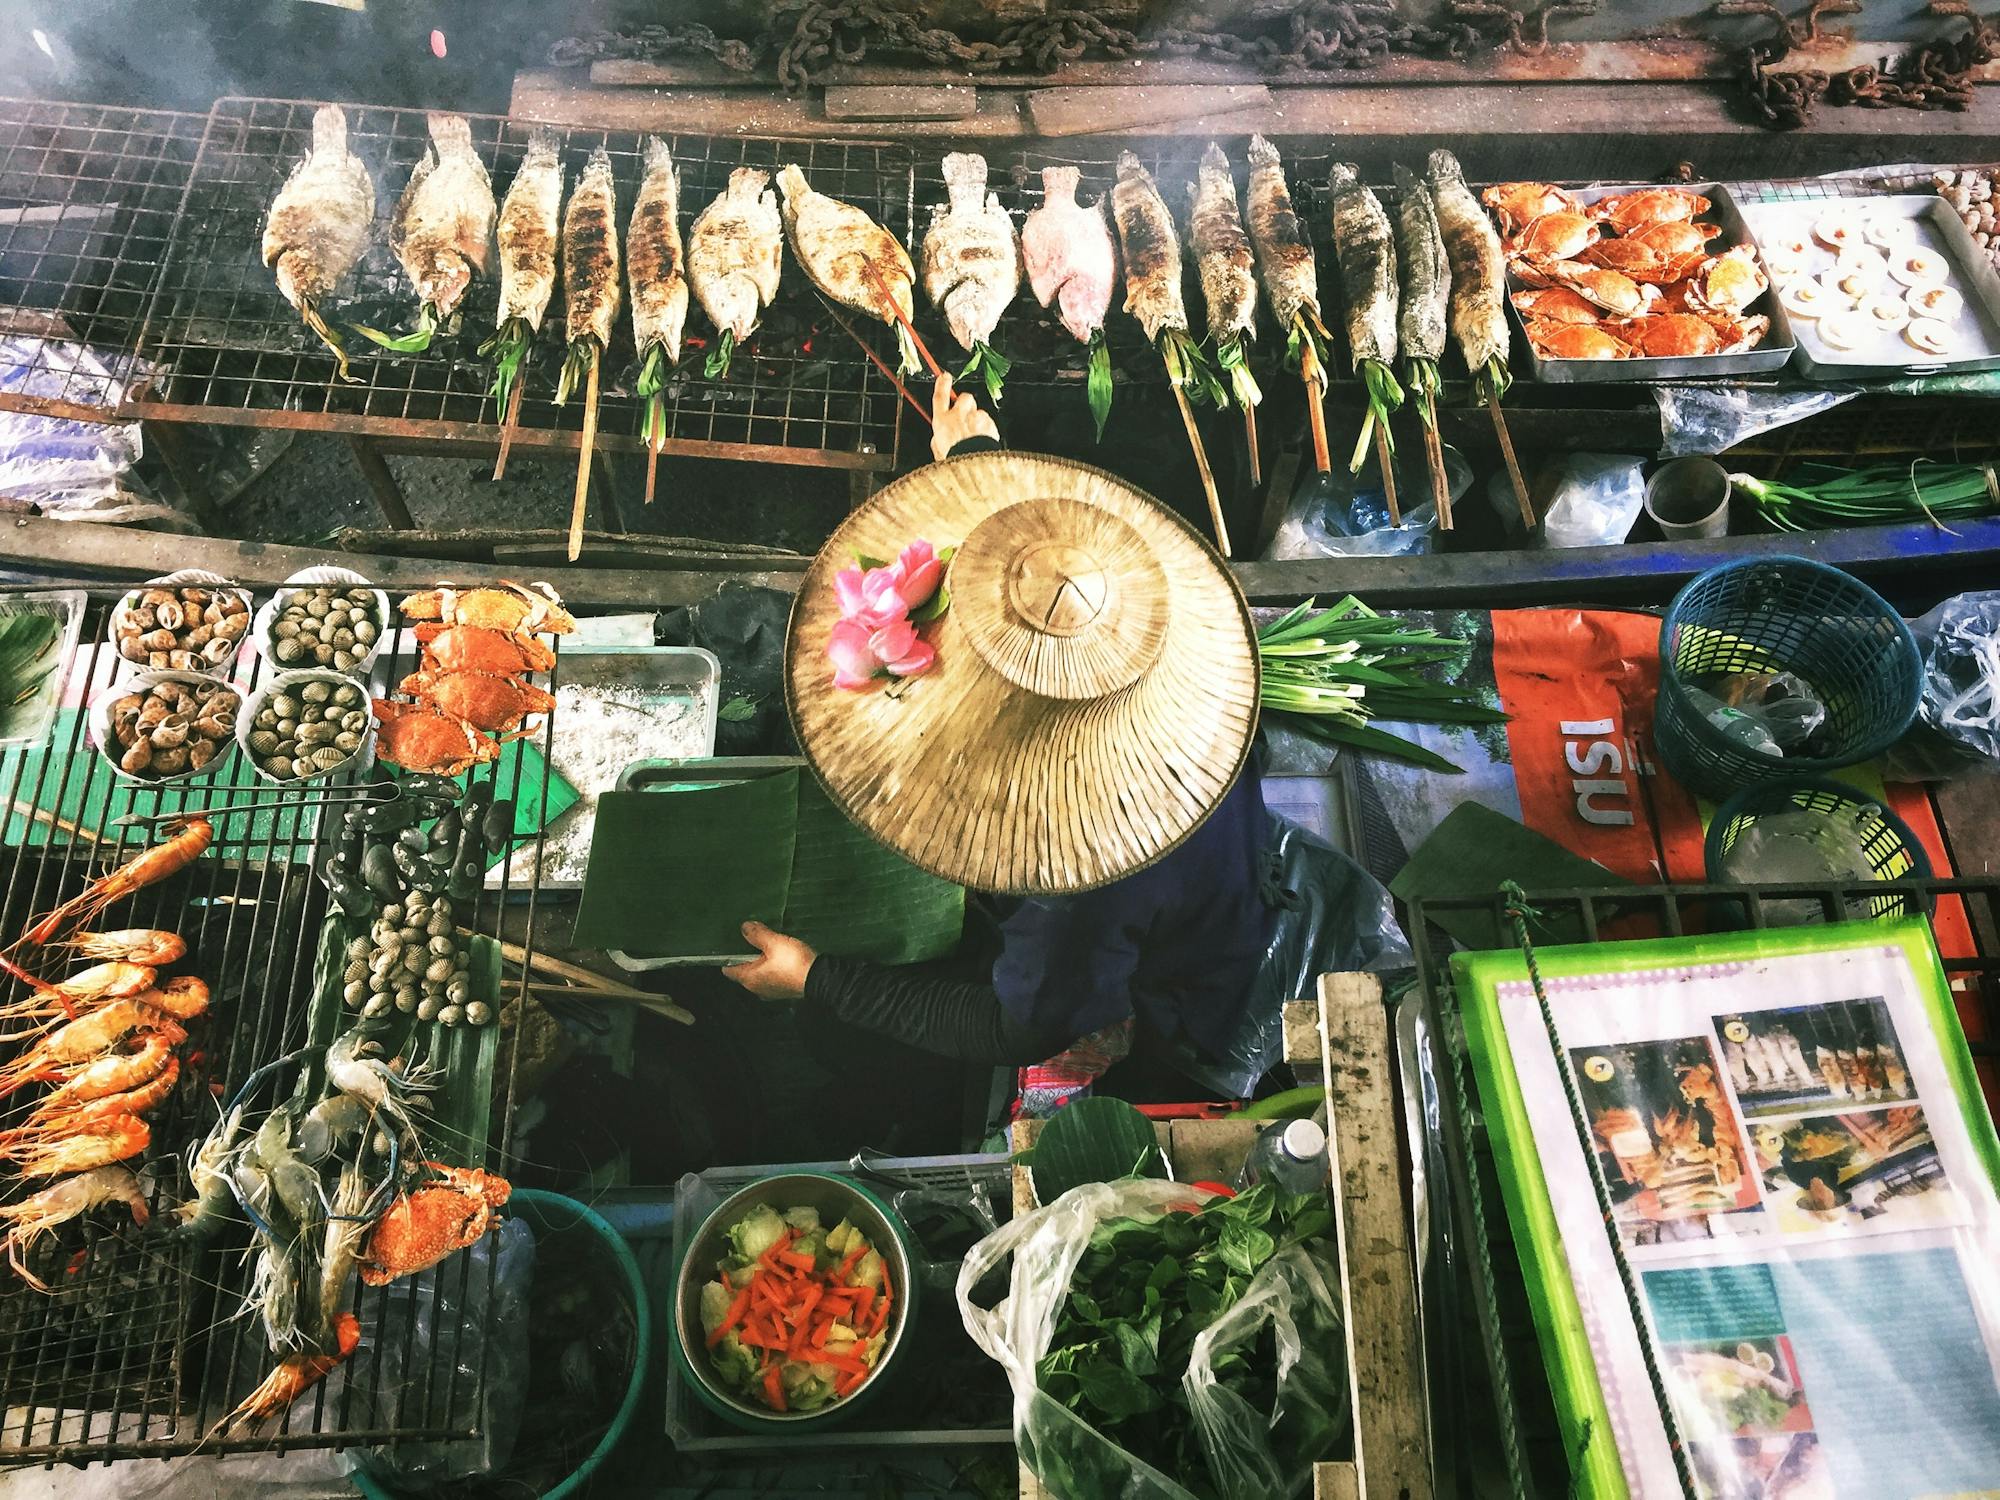 Eine Frau trägt einen thailändischen Strohhut und bereitet thailändische Spezialitäten zu: Fisch und Meeresfrüchte werden gegrillt und frisches Gemüse wird geschnitten. 